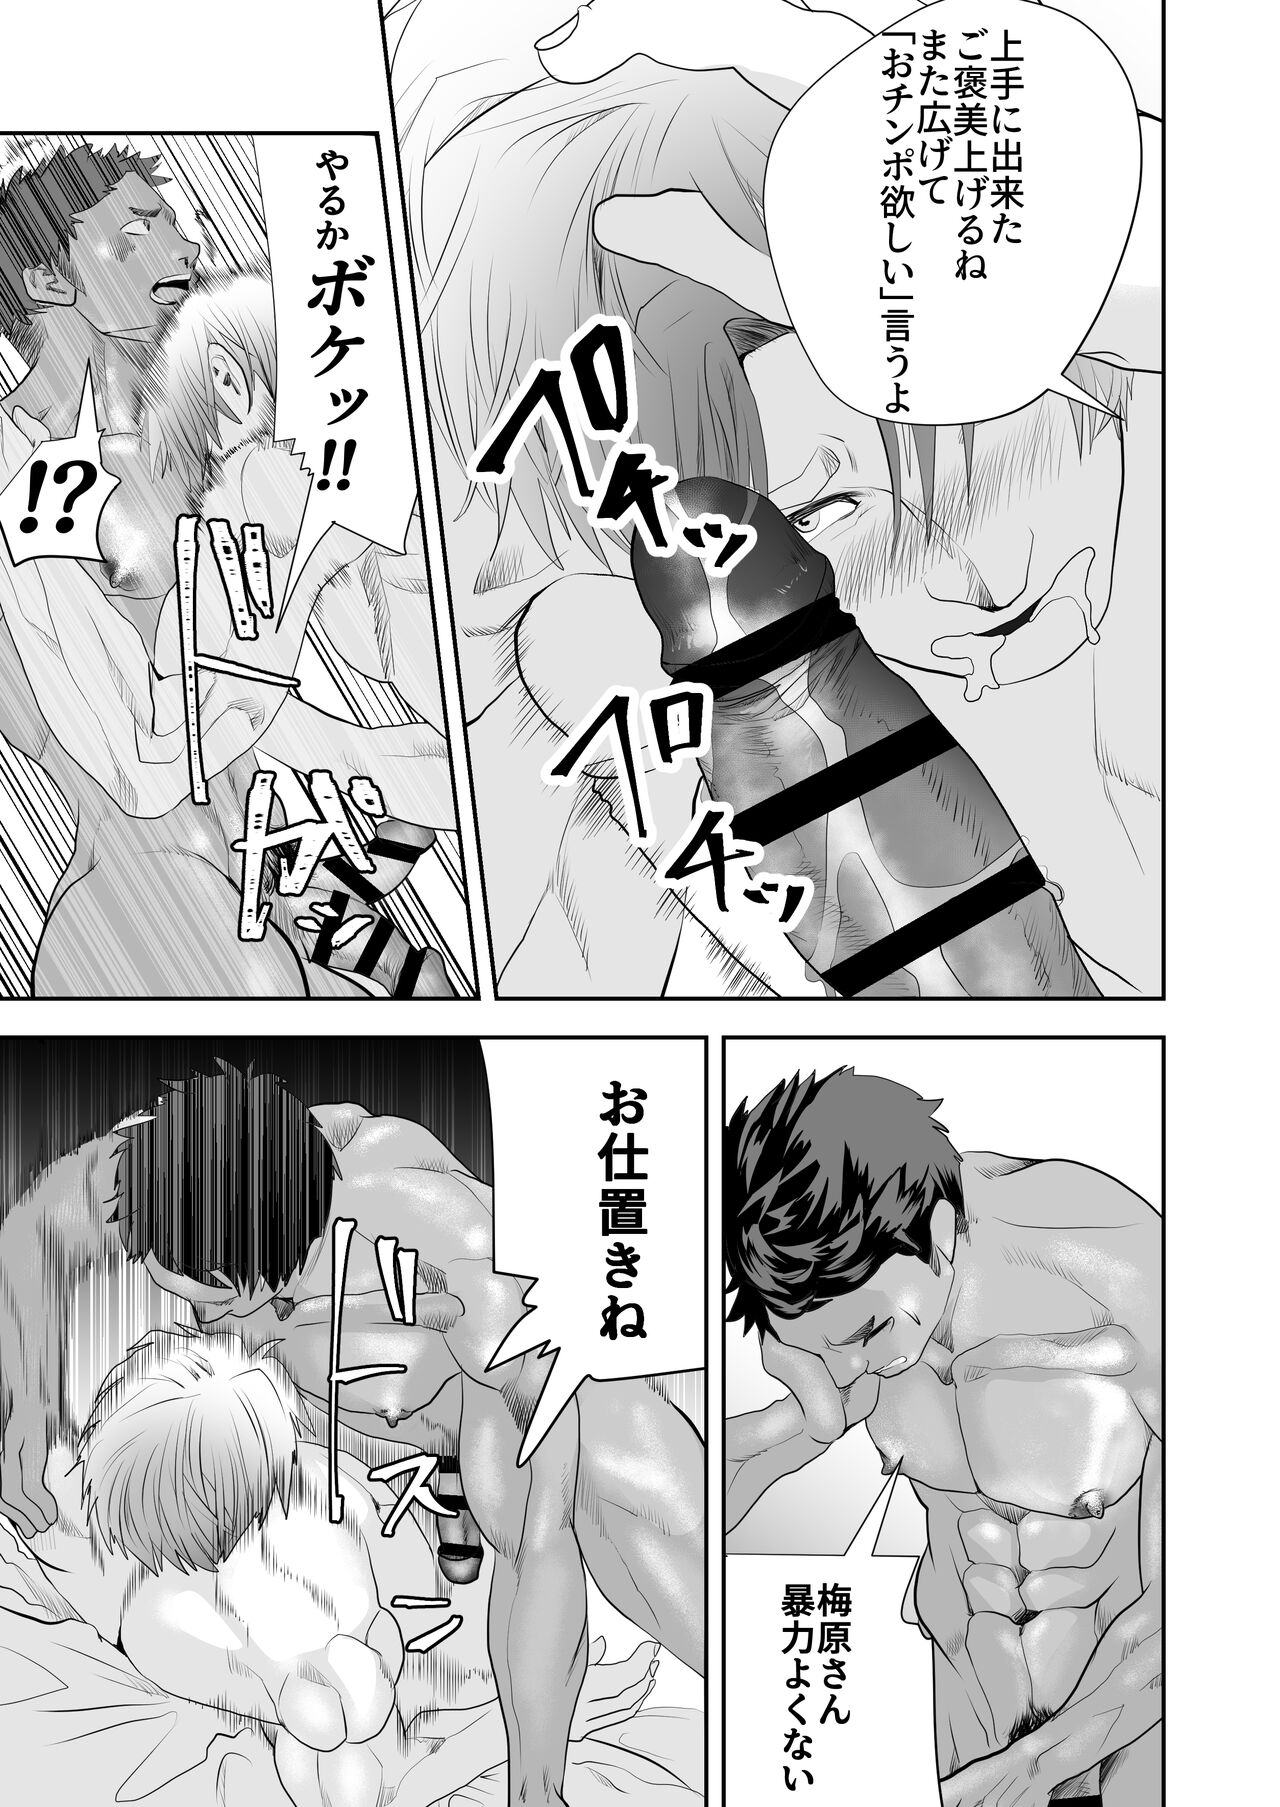 Umehara-kun is Weak Against Big Dicks